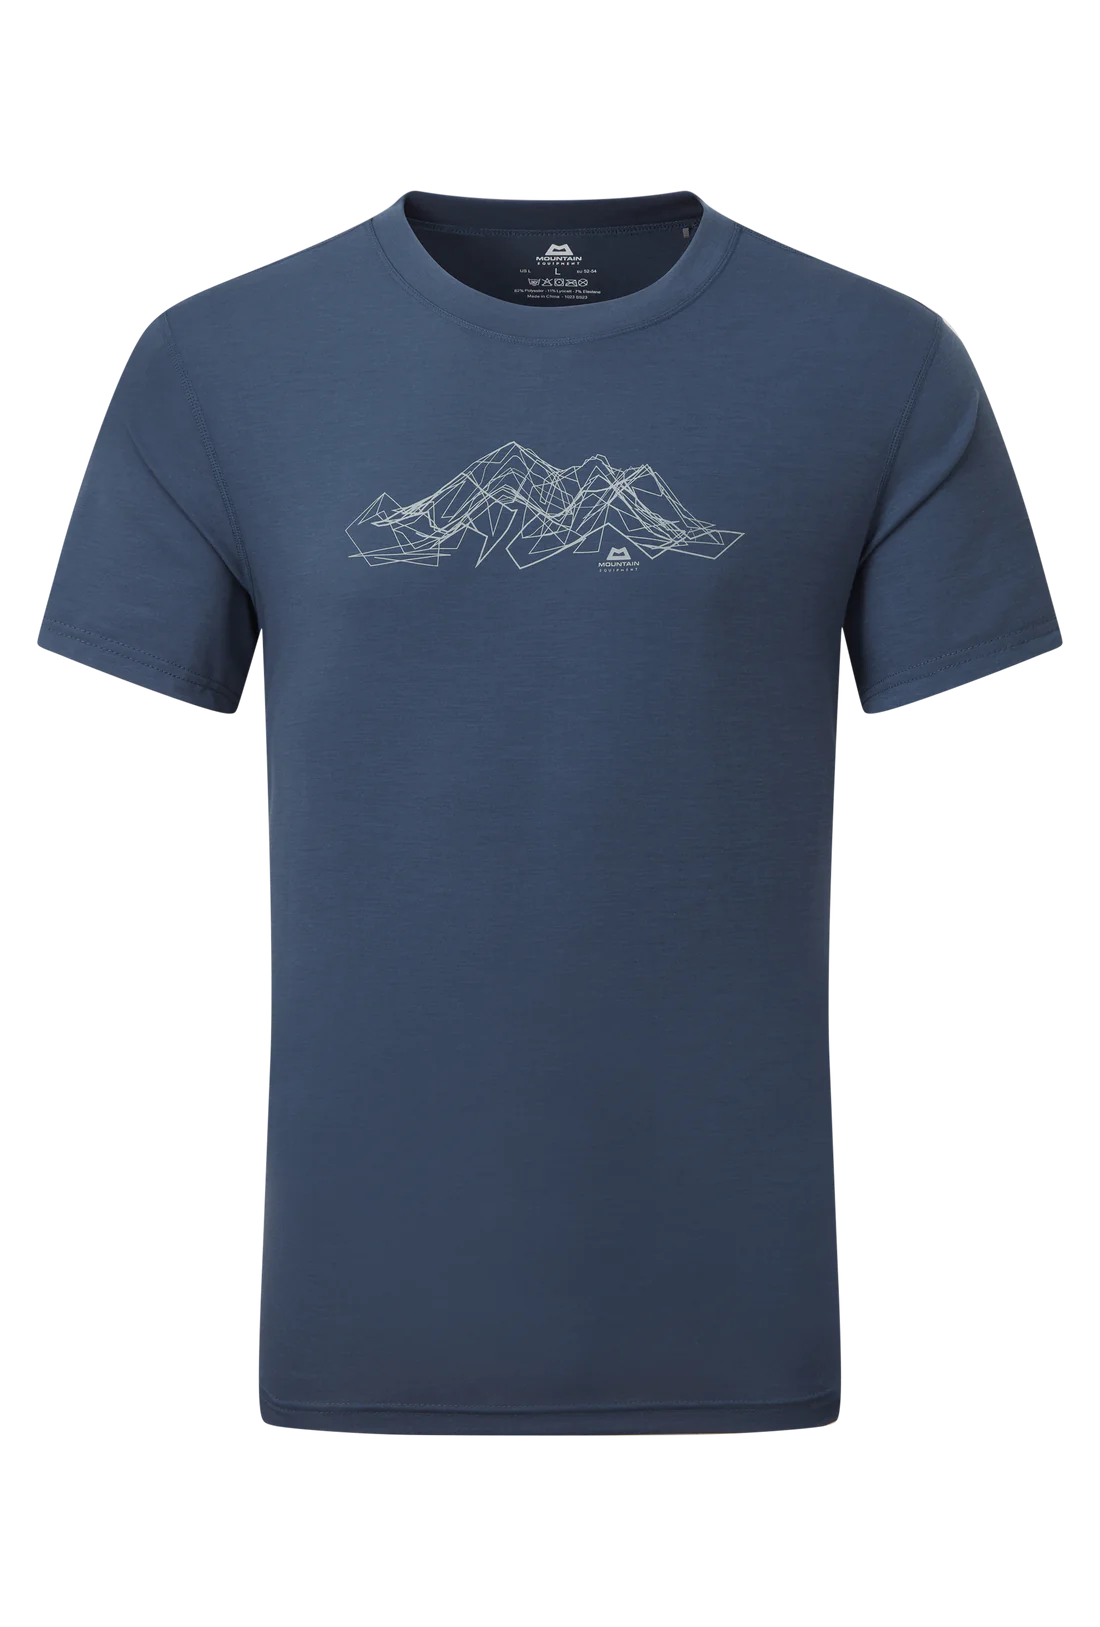 Mountain Equipment Skyline Tee Shirt Navy